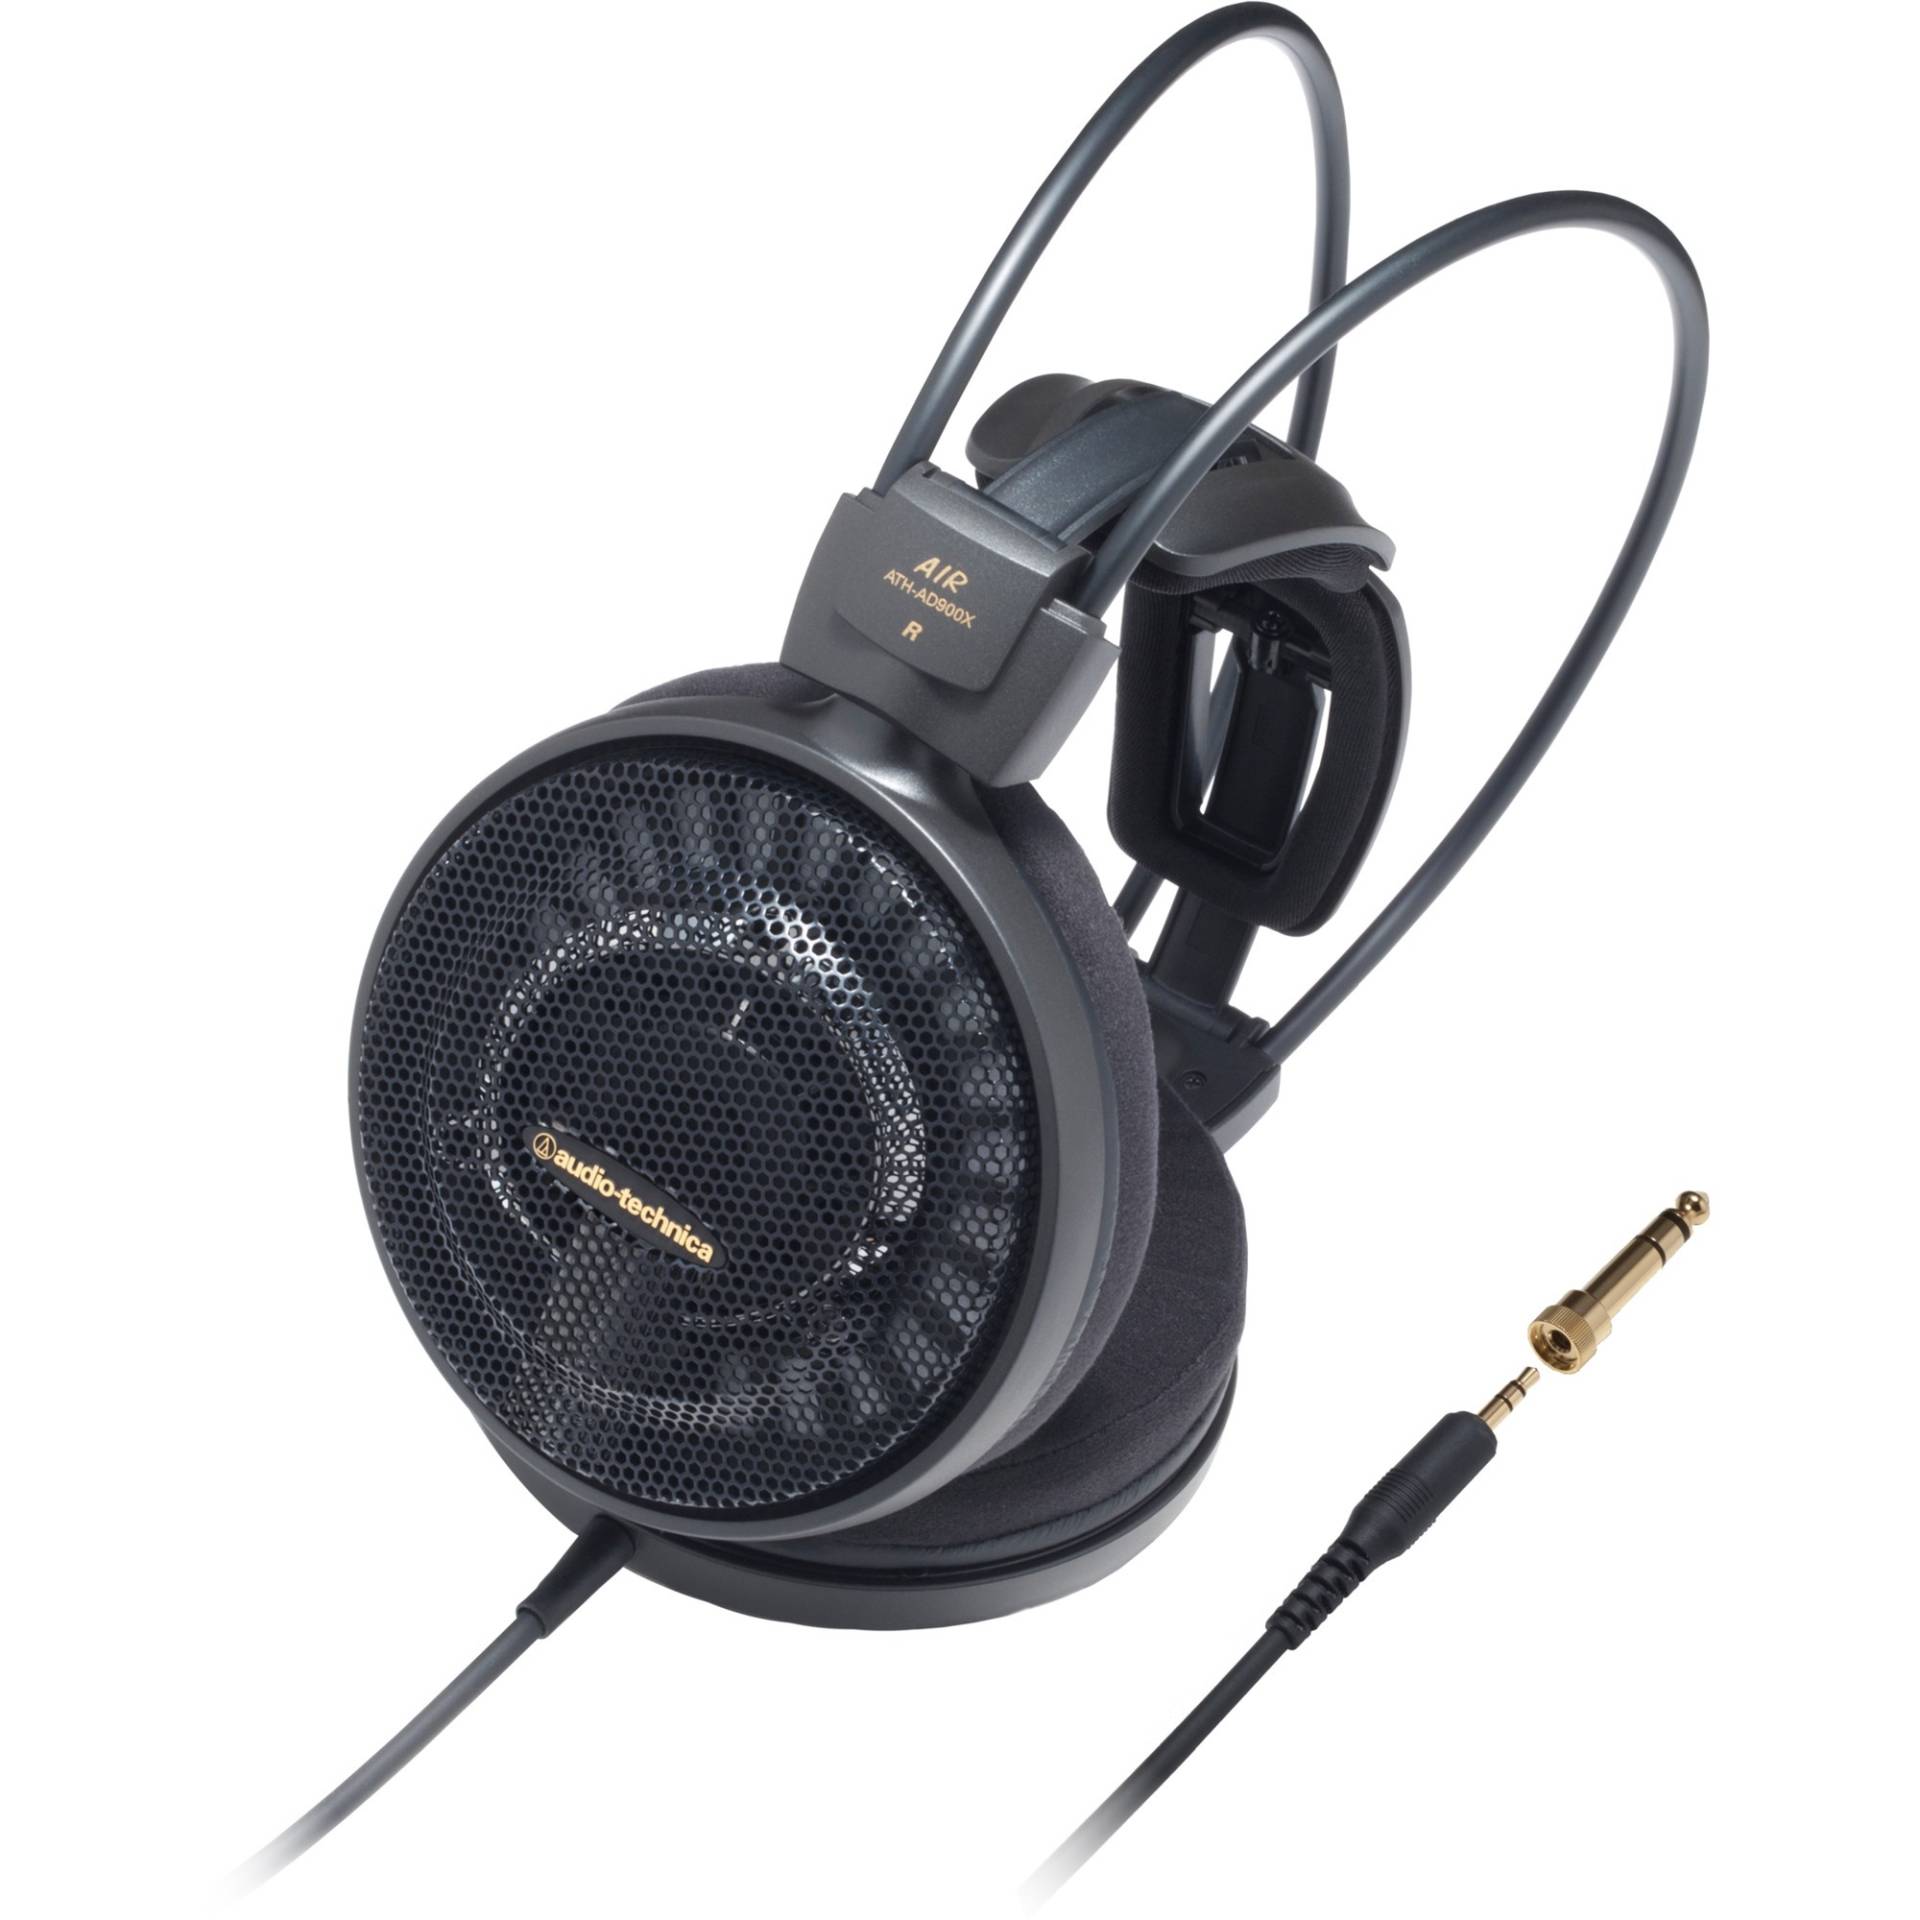 ATH-AD900X, Kopfhörer von Audio-Technica